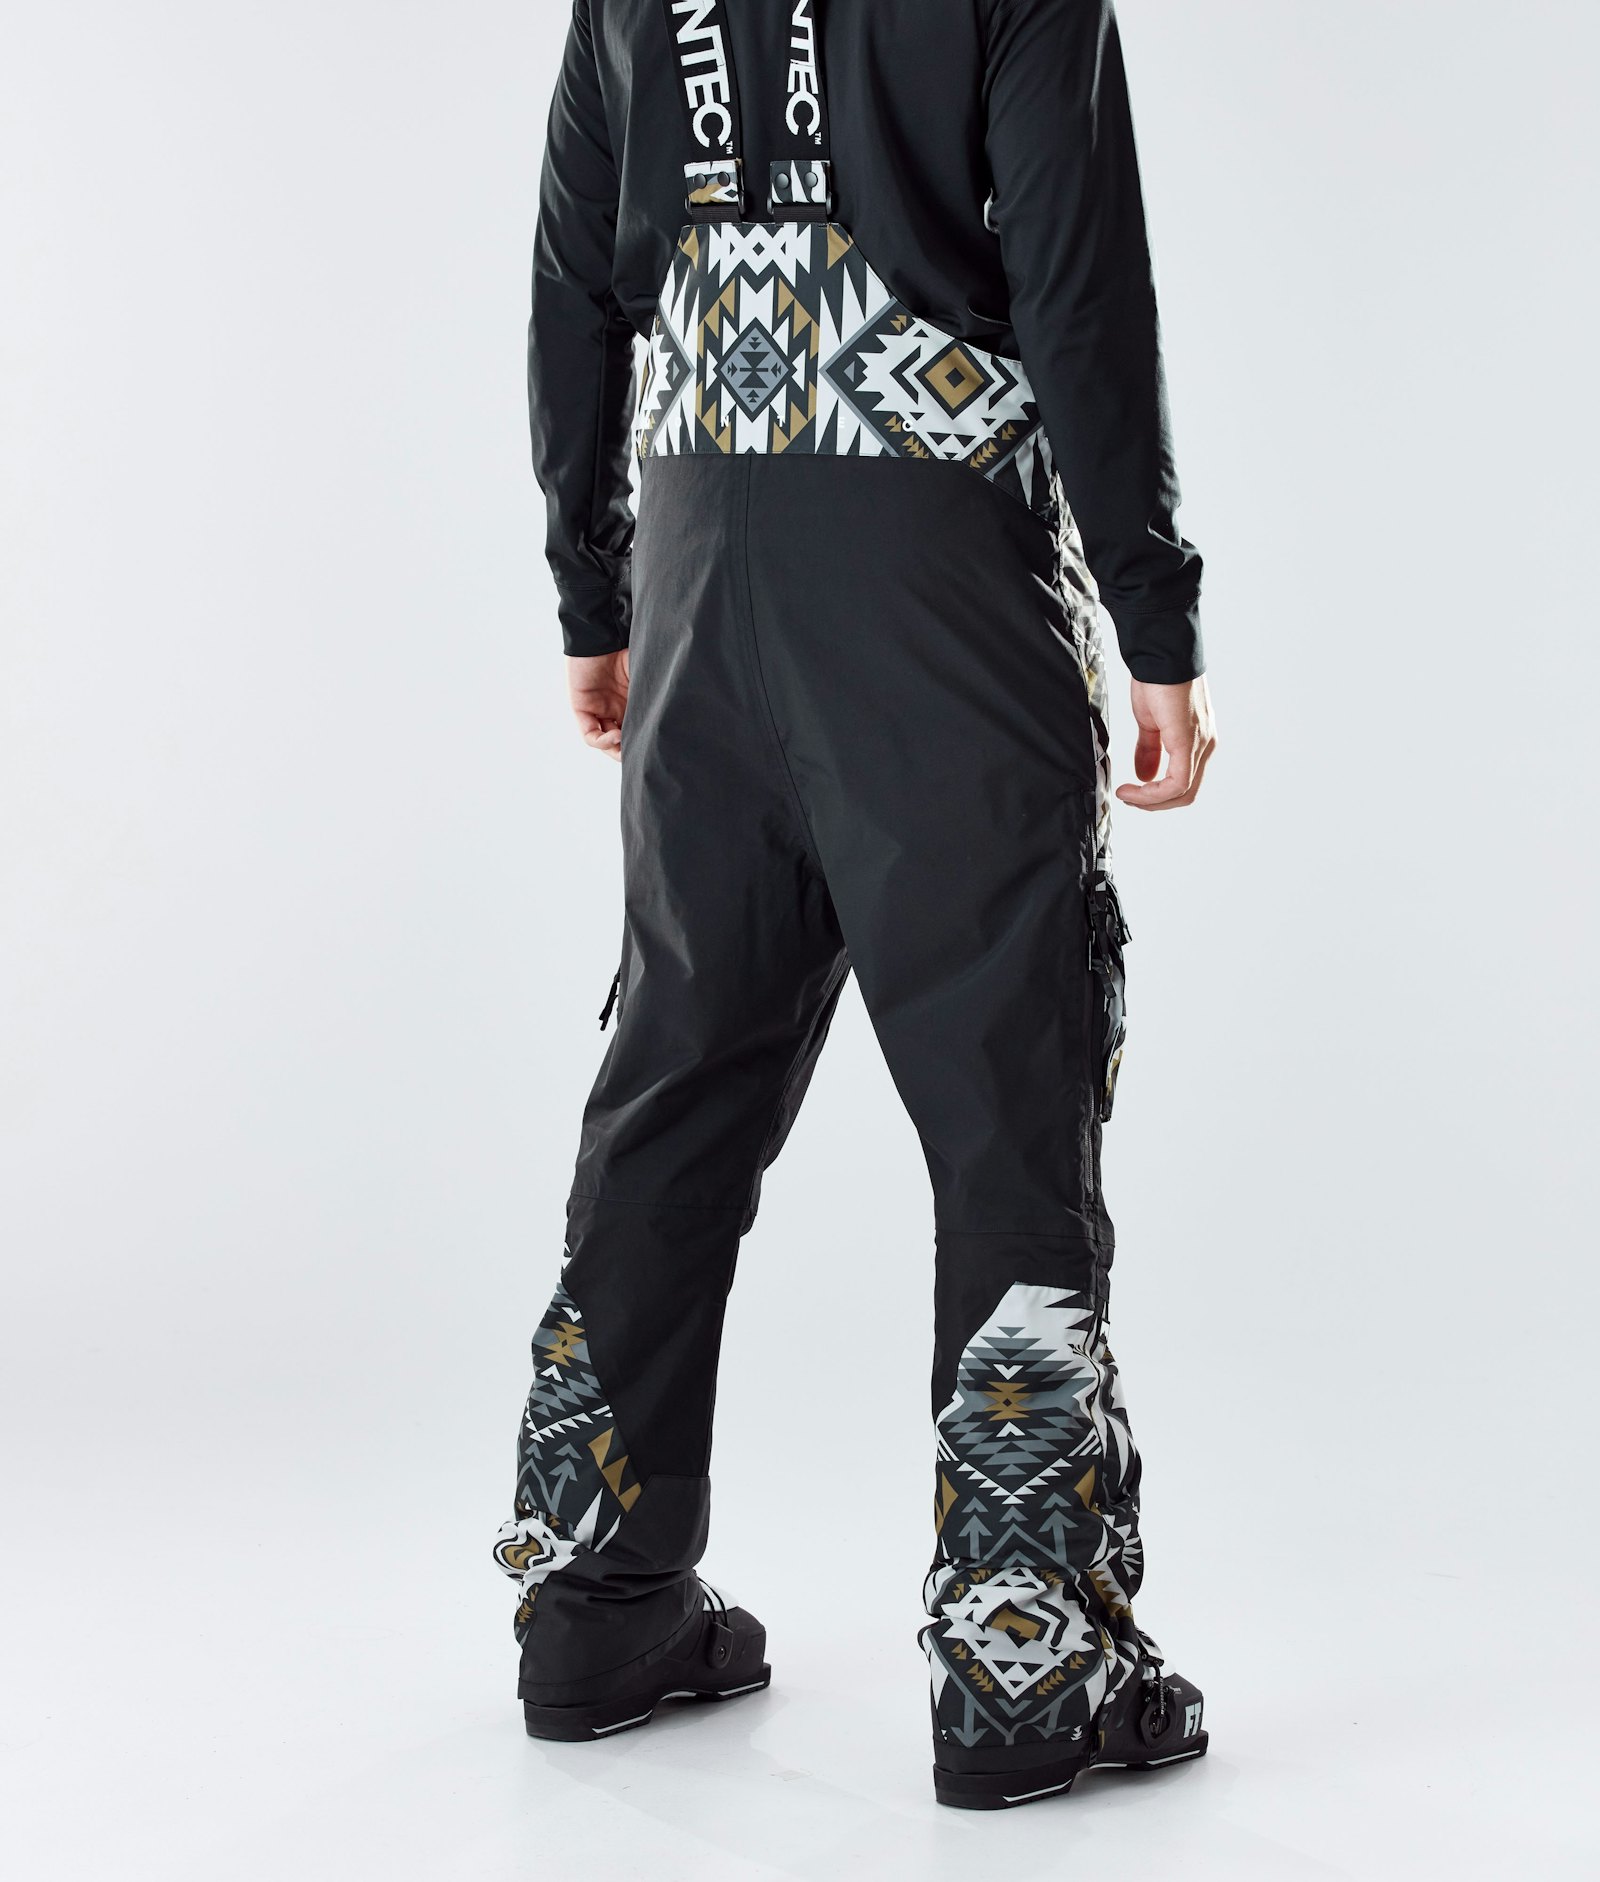 Montec Fawk 2020 Spodnie Narciarskie Mężczyźni Komber Gold/Black